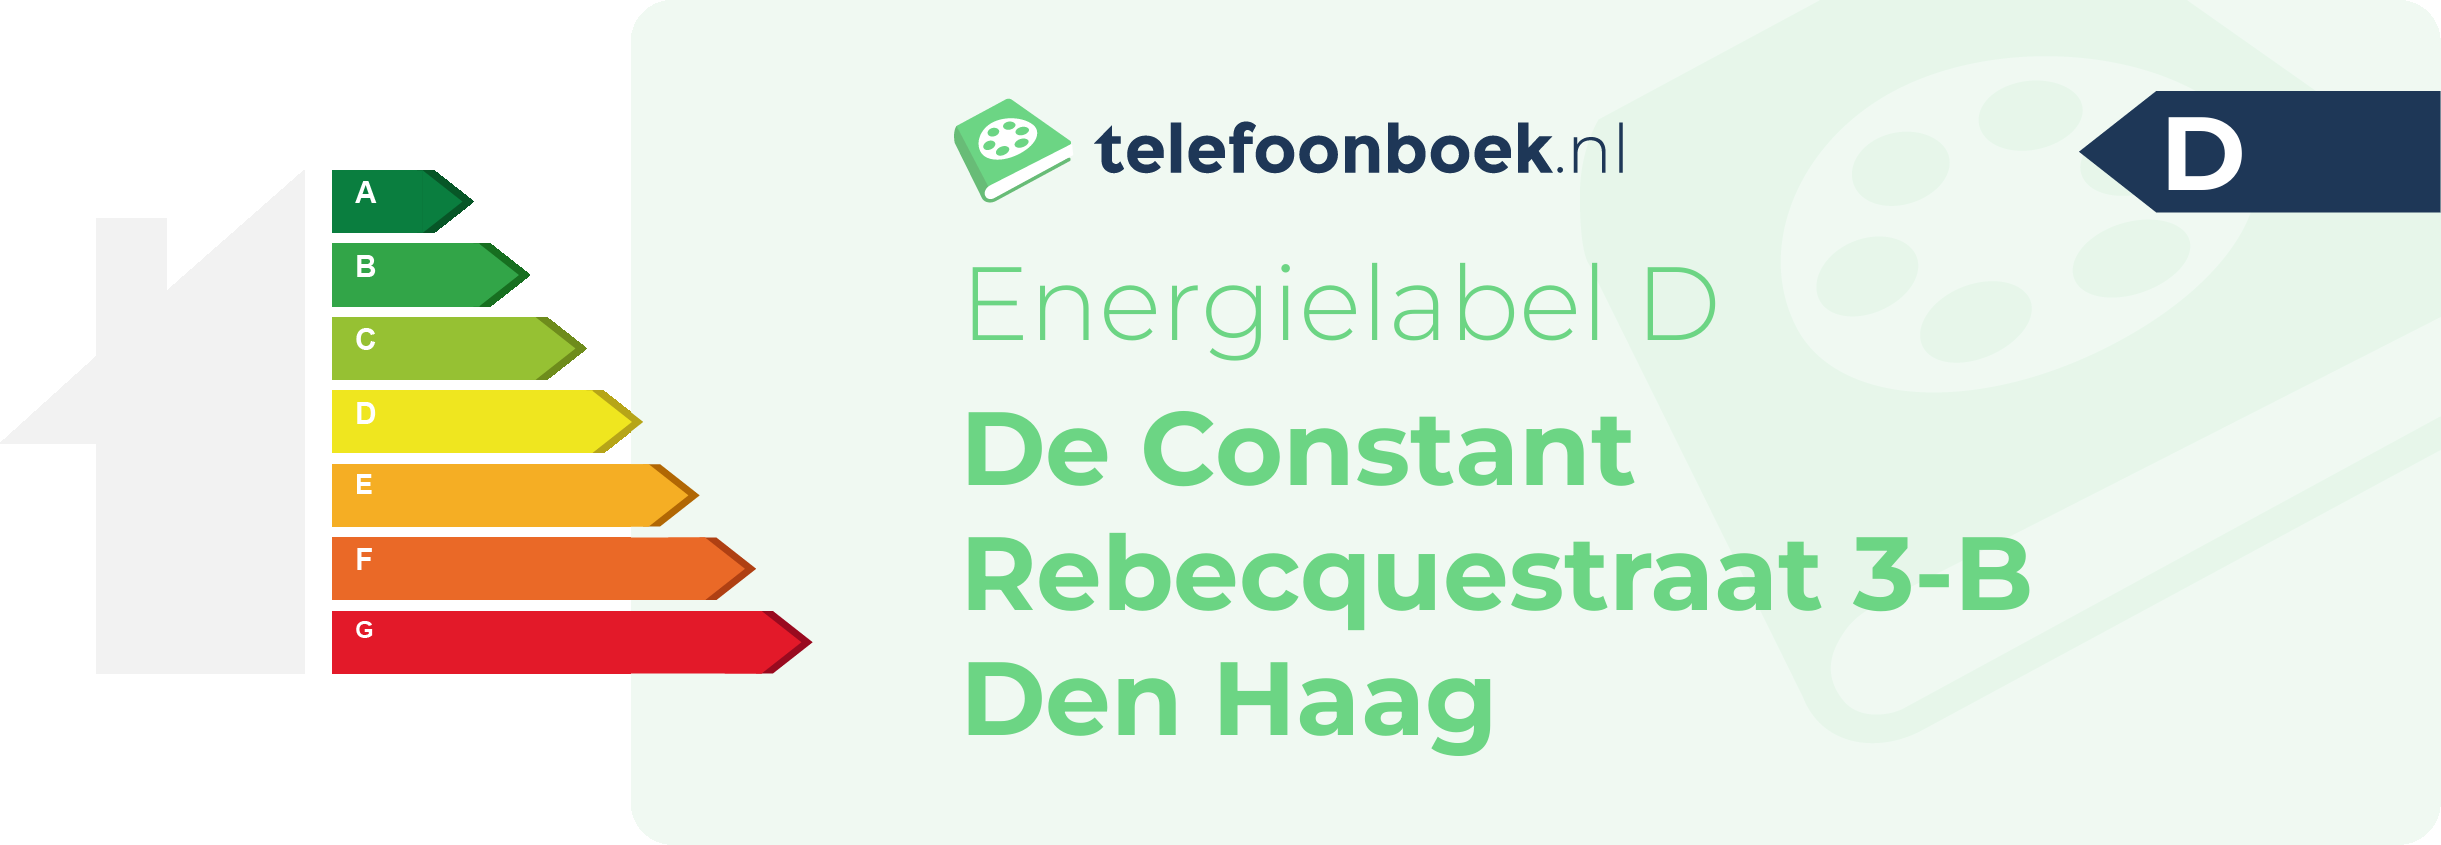 Energielabel De Constant Rebecquestraat 3-B Den Haag